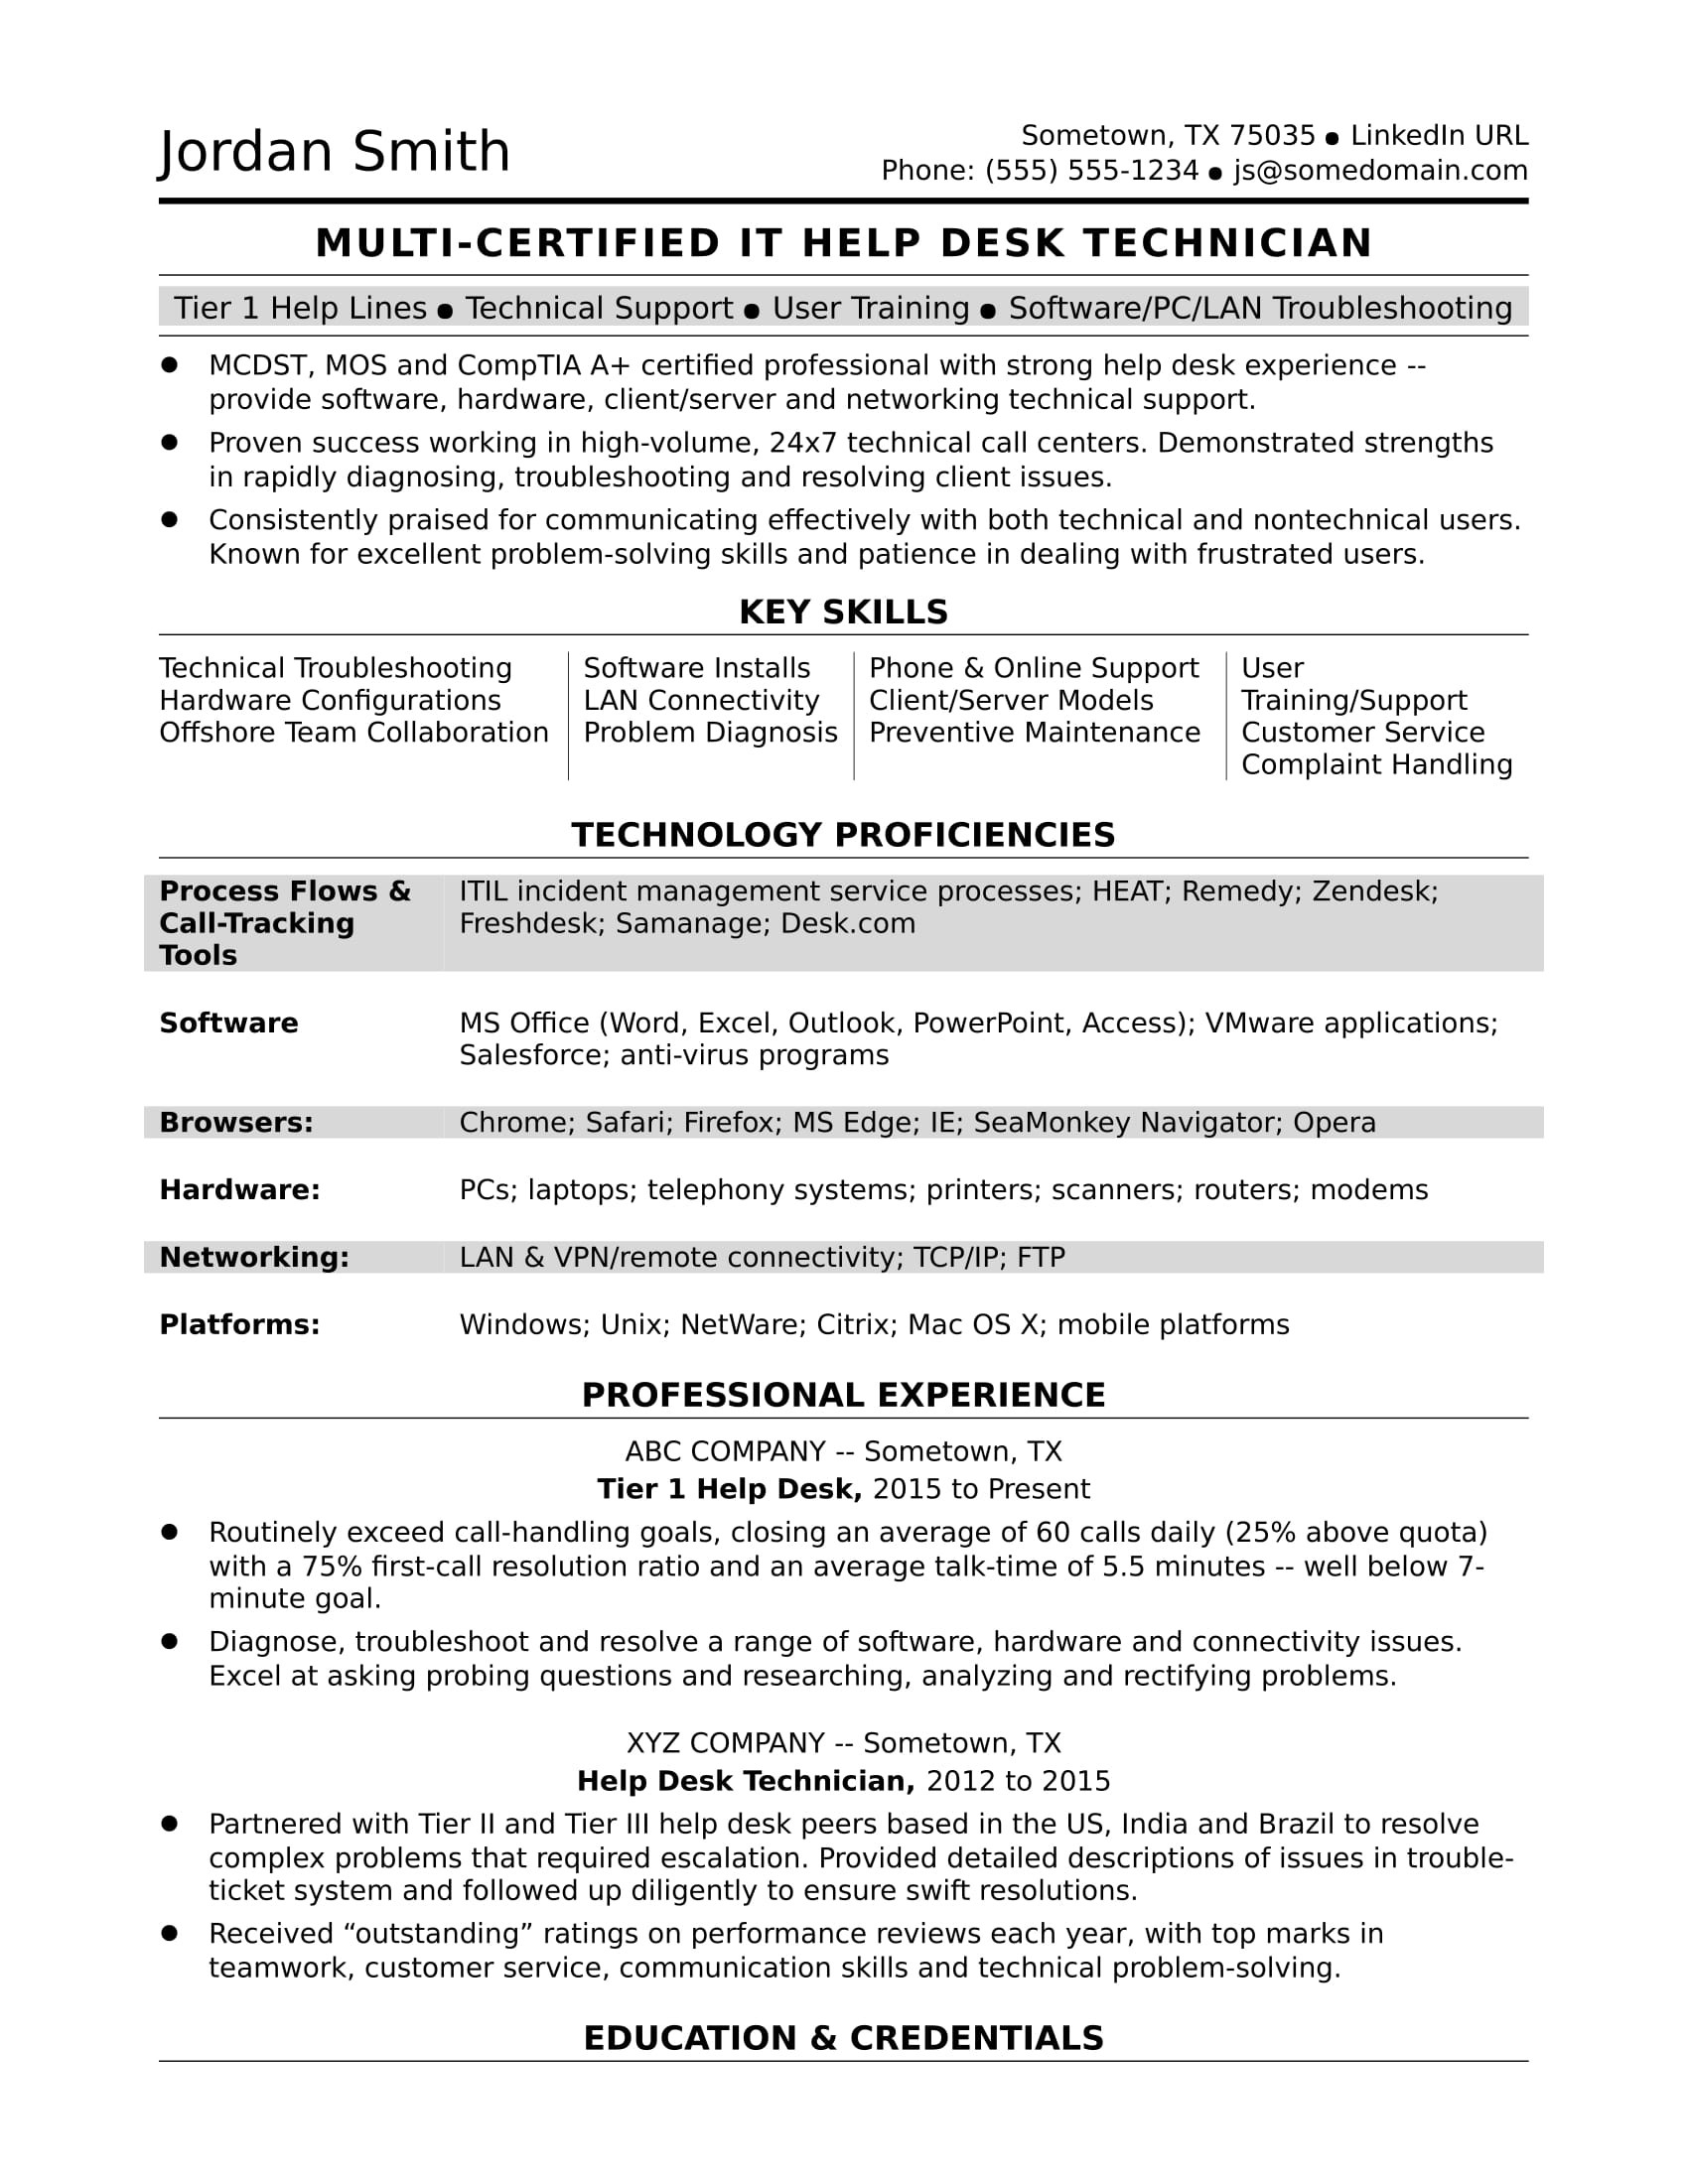 Sample Resume for Customer Service Desk Sample Resume for A Midlevel It Help Desk Professional Monster.com